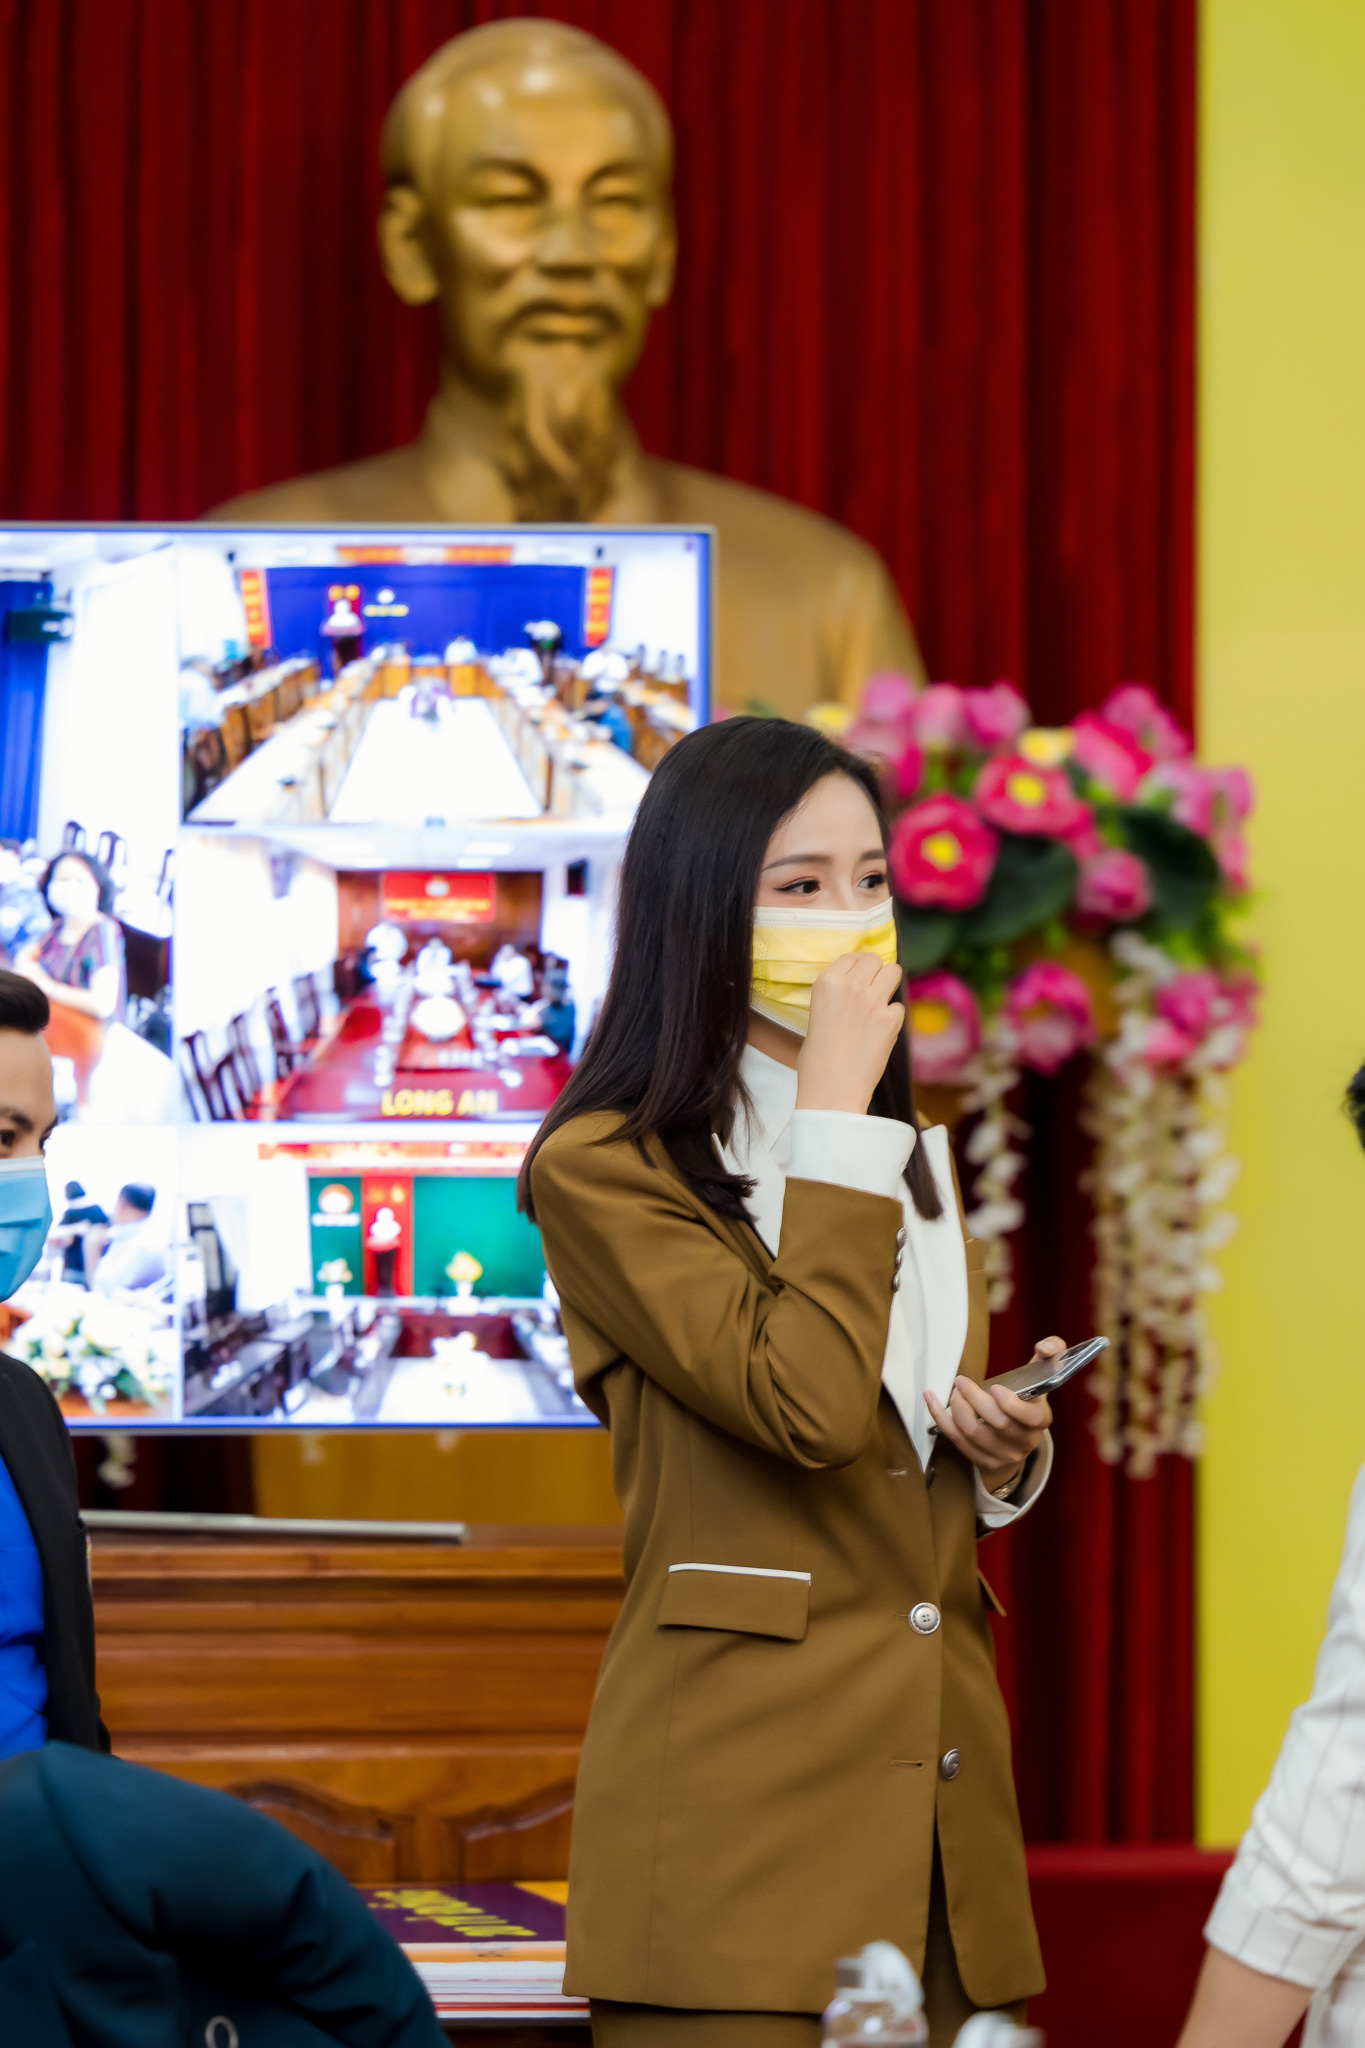 Hoa hậu Mai Phương Thuý gặp Thủ tướng Chính phủ, đại diện ủng hộ 20 tỷ đồng phòng chống đại dịch Covid-19 - Ảnh 7.